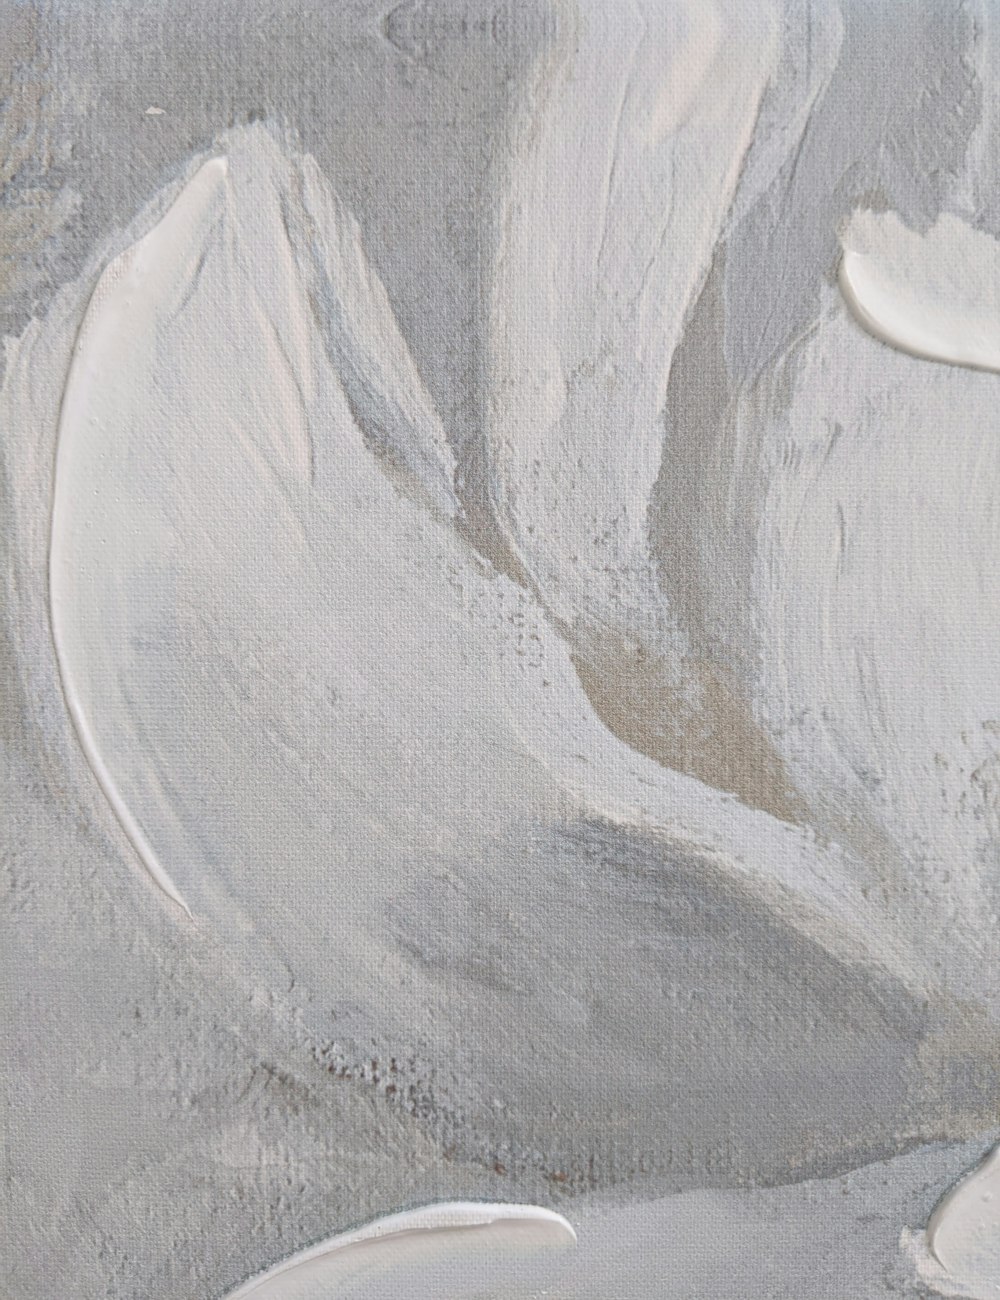 peinture abstraite blanche et grise